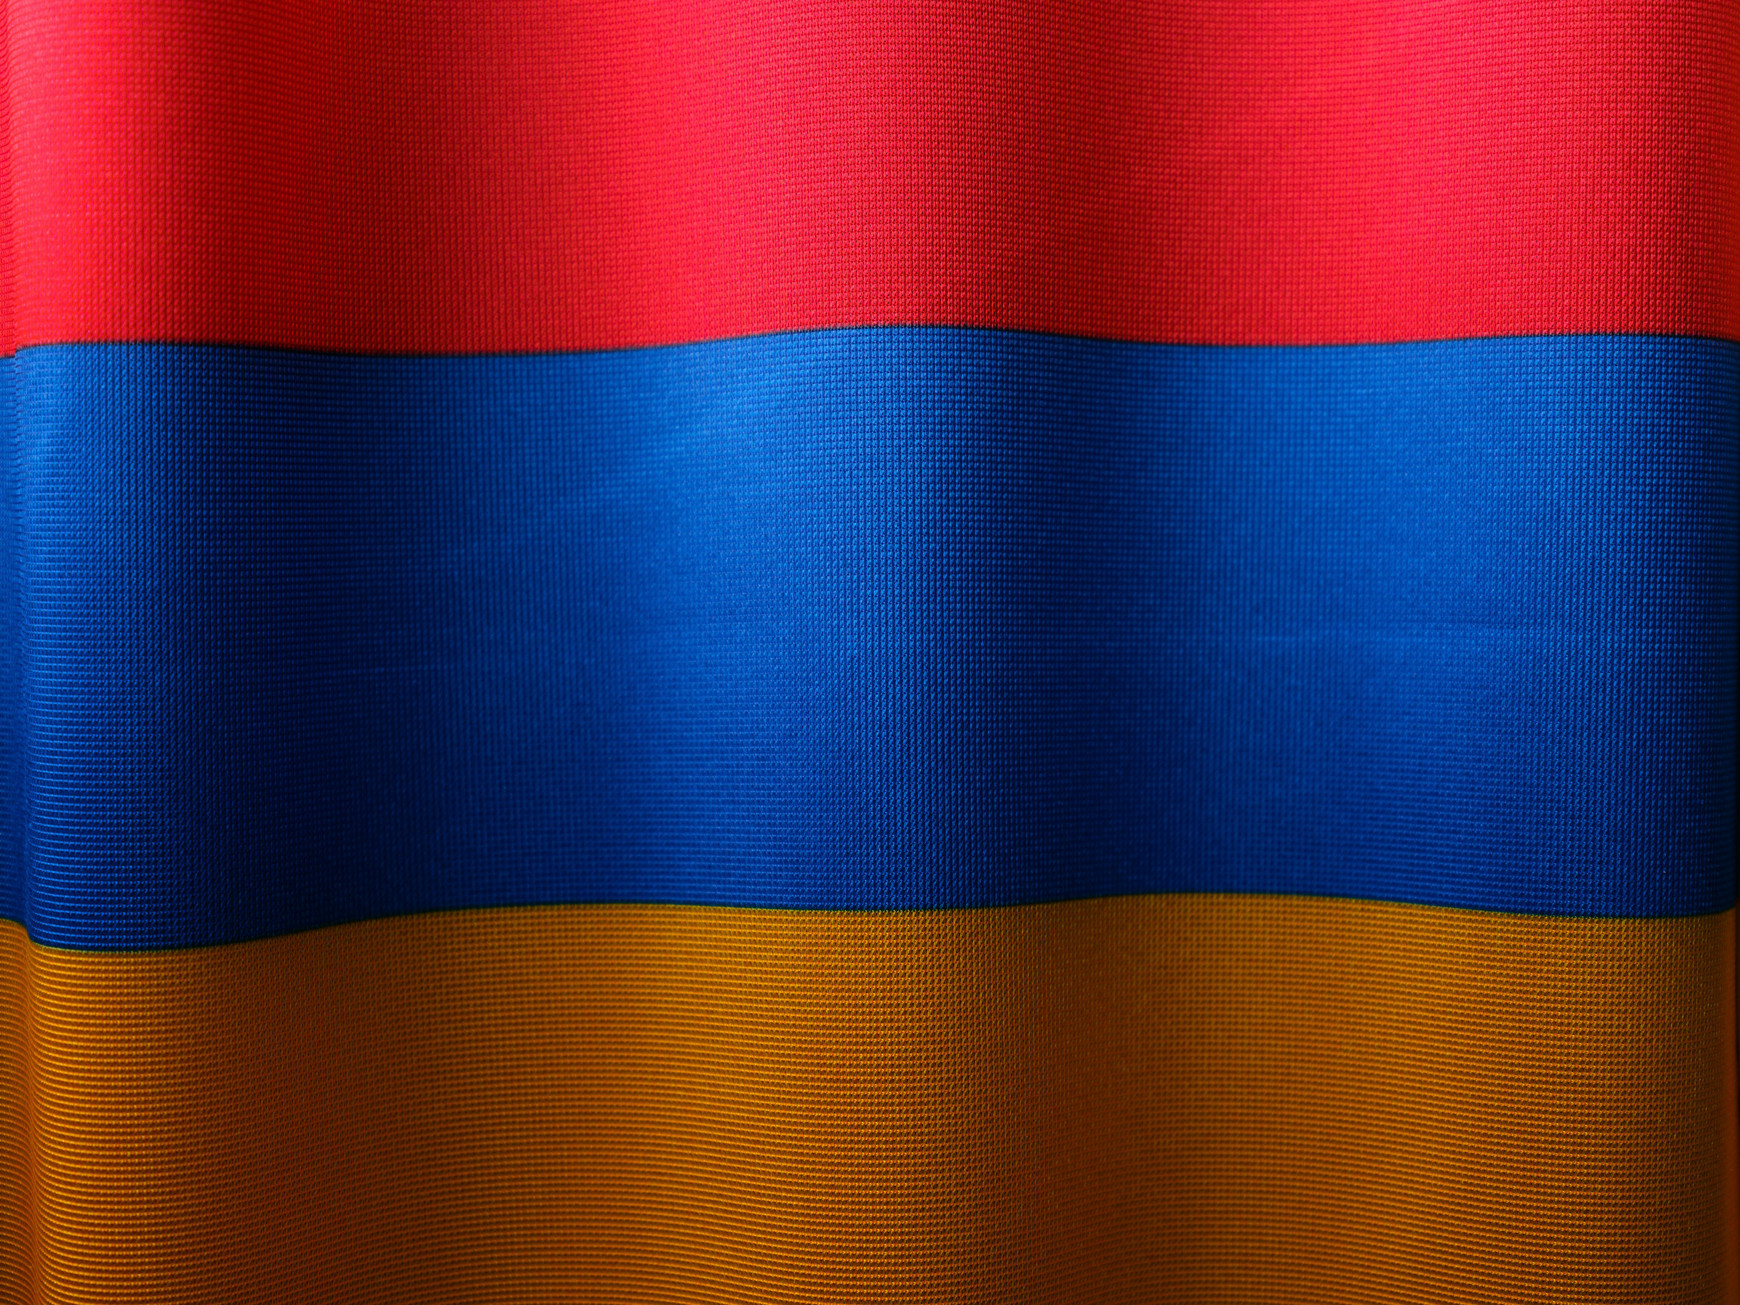 ©engin akyurt sur Unsplash L'Arménie dans l'UE ?